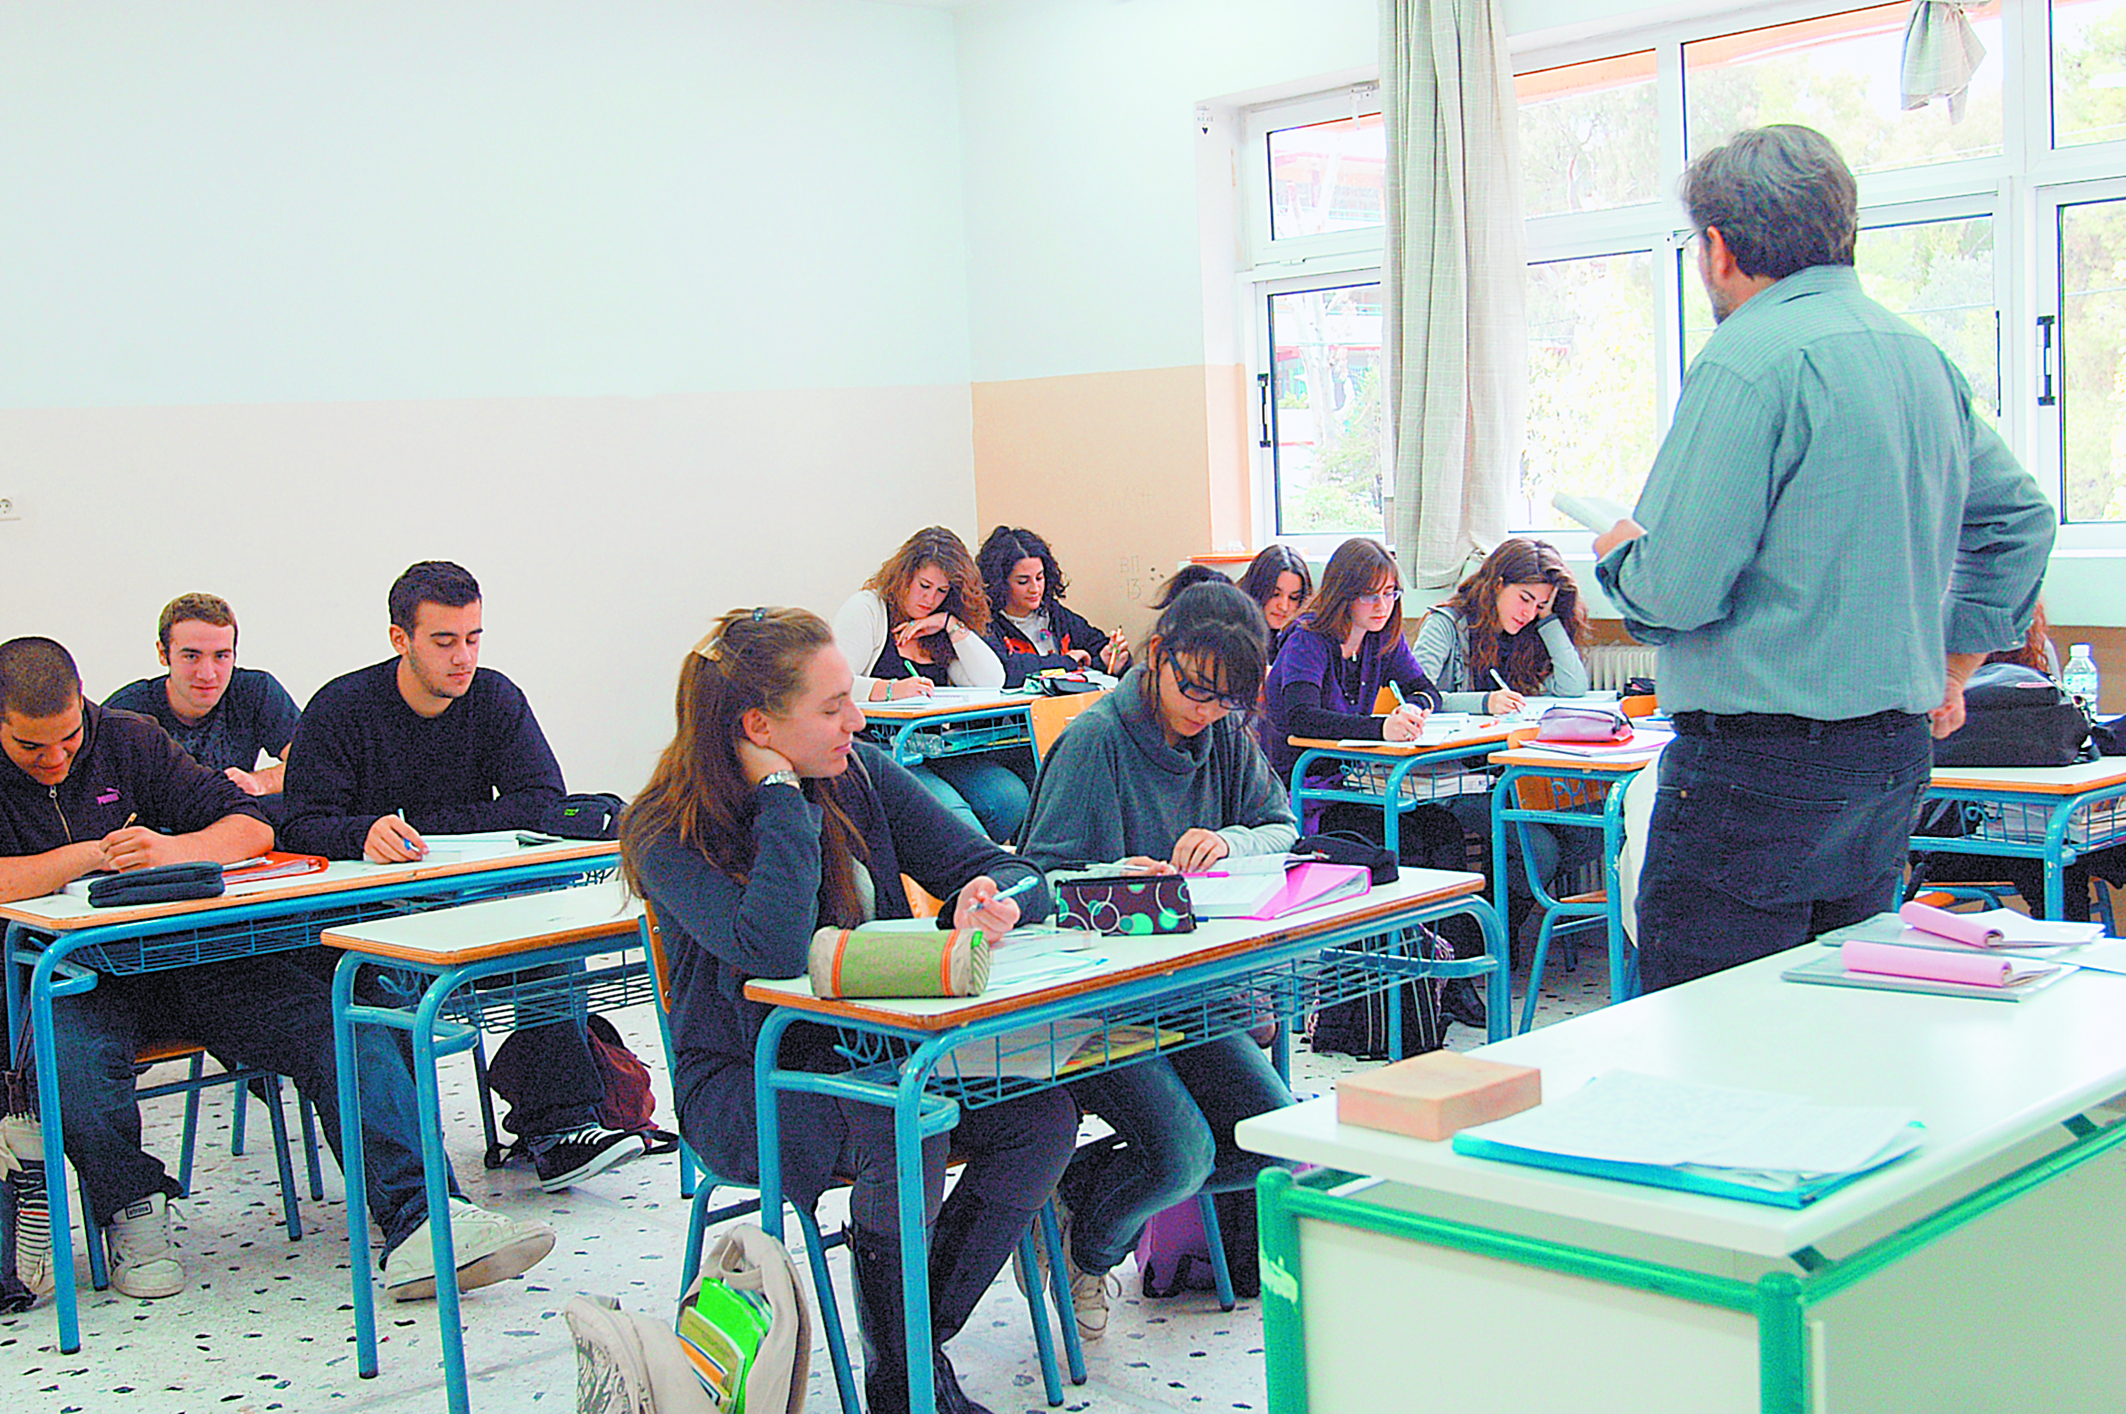 Αρβανιτόπουλος: Δεν υπάρχουν νέες απαιτήσεις για να αγωνιούν οι μαθητές | tovima.gr